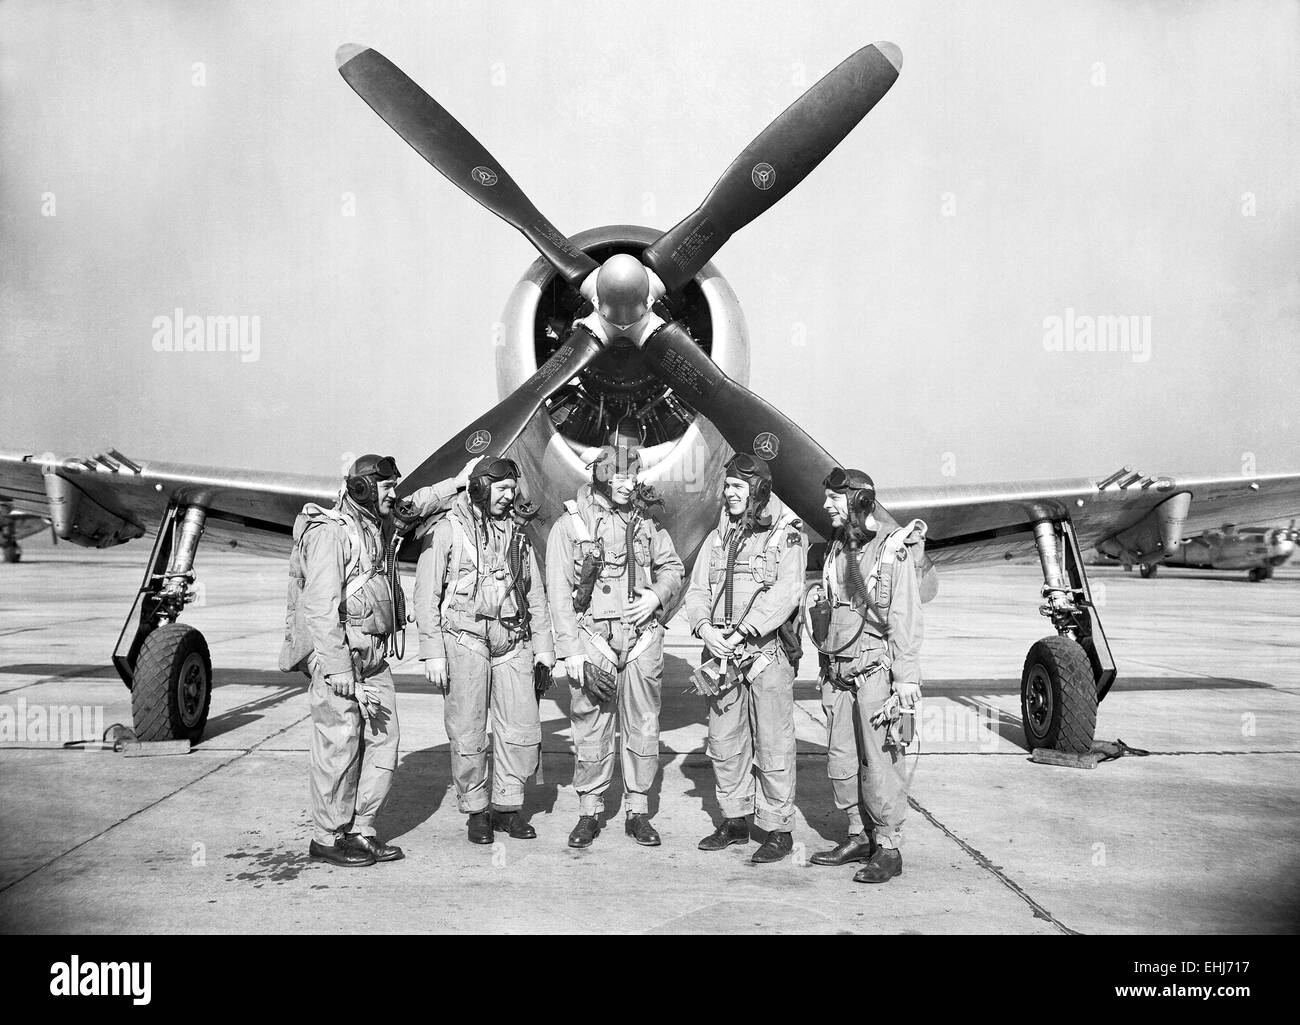 NACA Foto Test Piloten (v.l.) Mel Gough, Hoover Kraut, Jack Reeder, Steve Cavallo und Bill Gray stehen vor einer p-47 Thunderbolt. Stockfoto